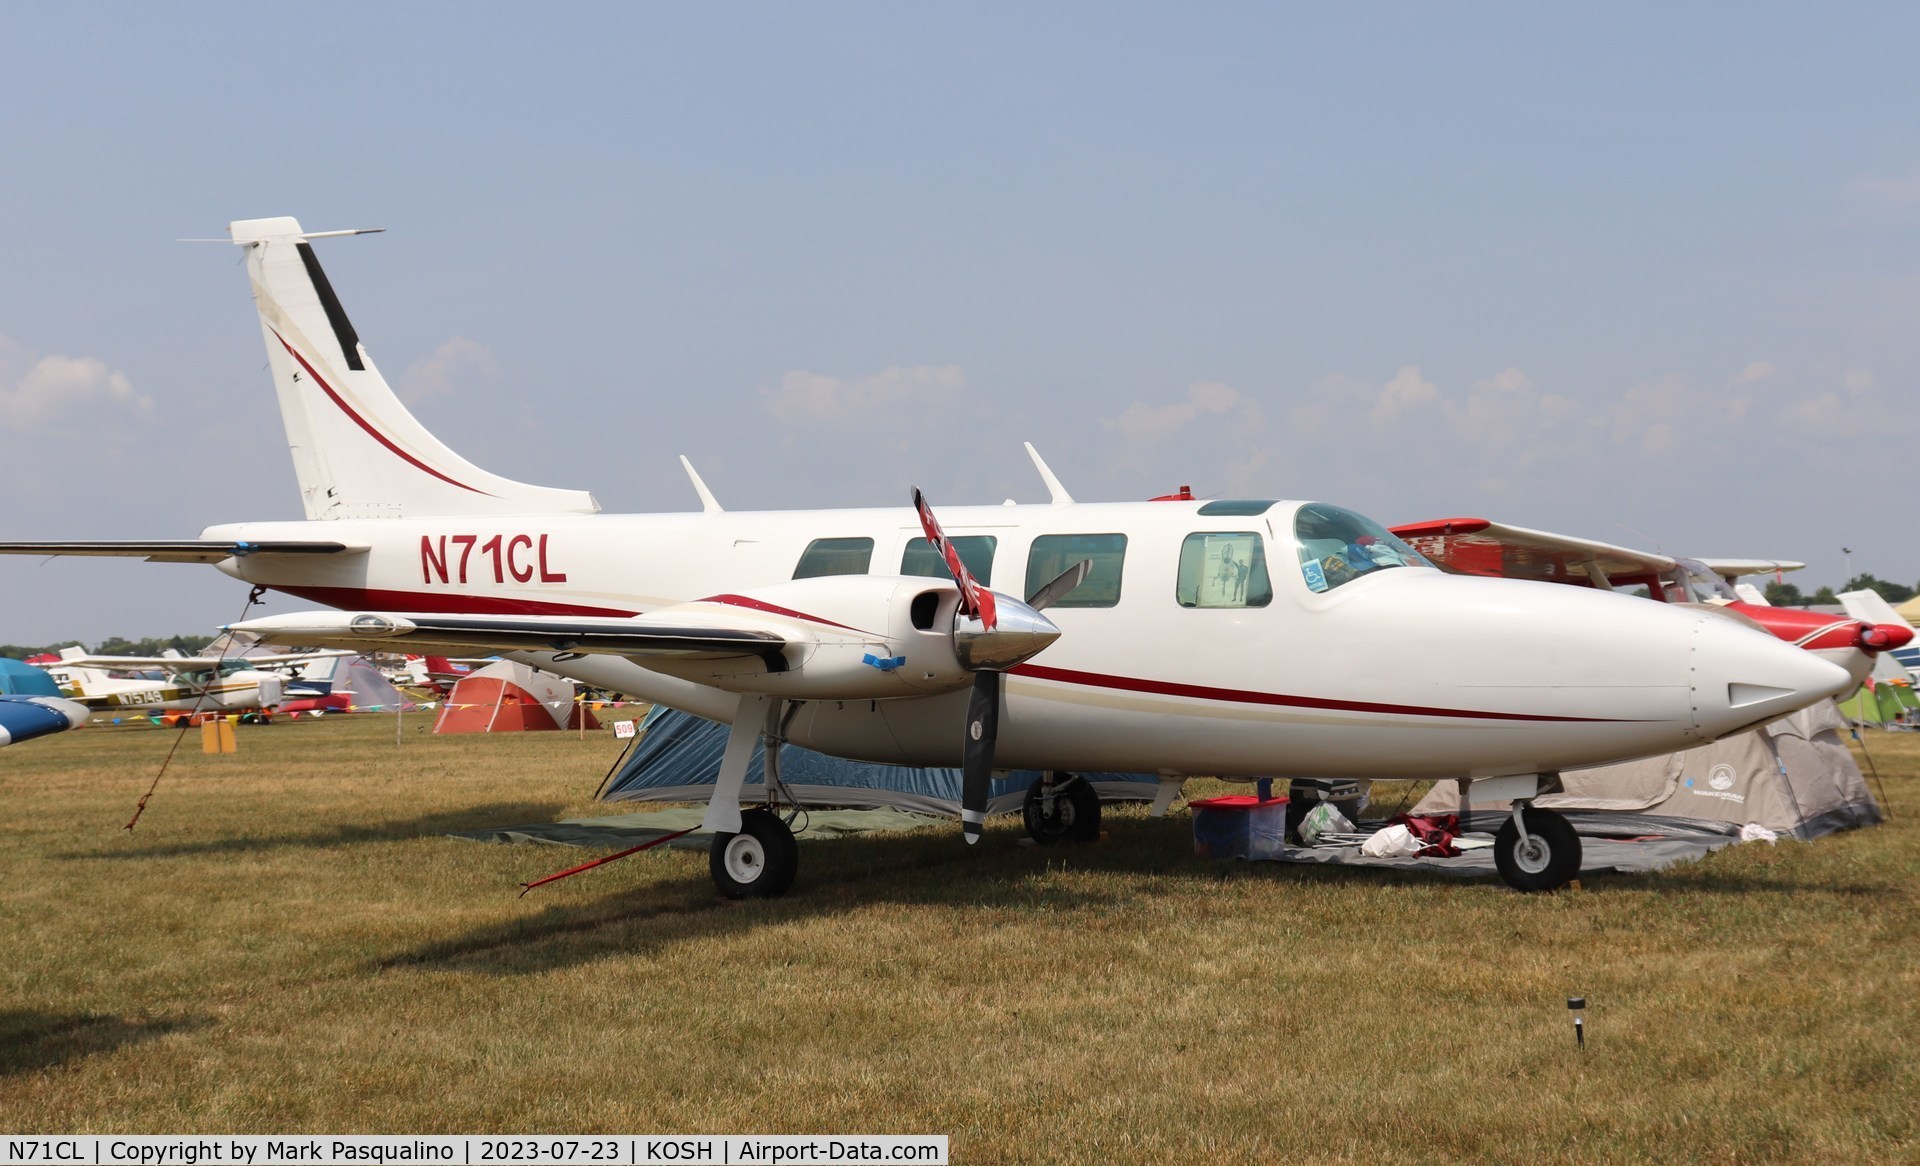 N71CL, 1979 Piper Aerostar 600 C/N 6007248061225, Piper Aerostar 600